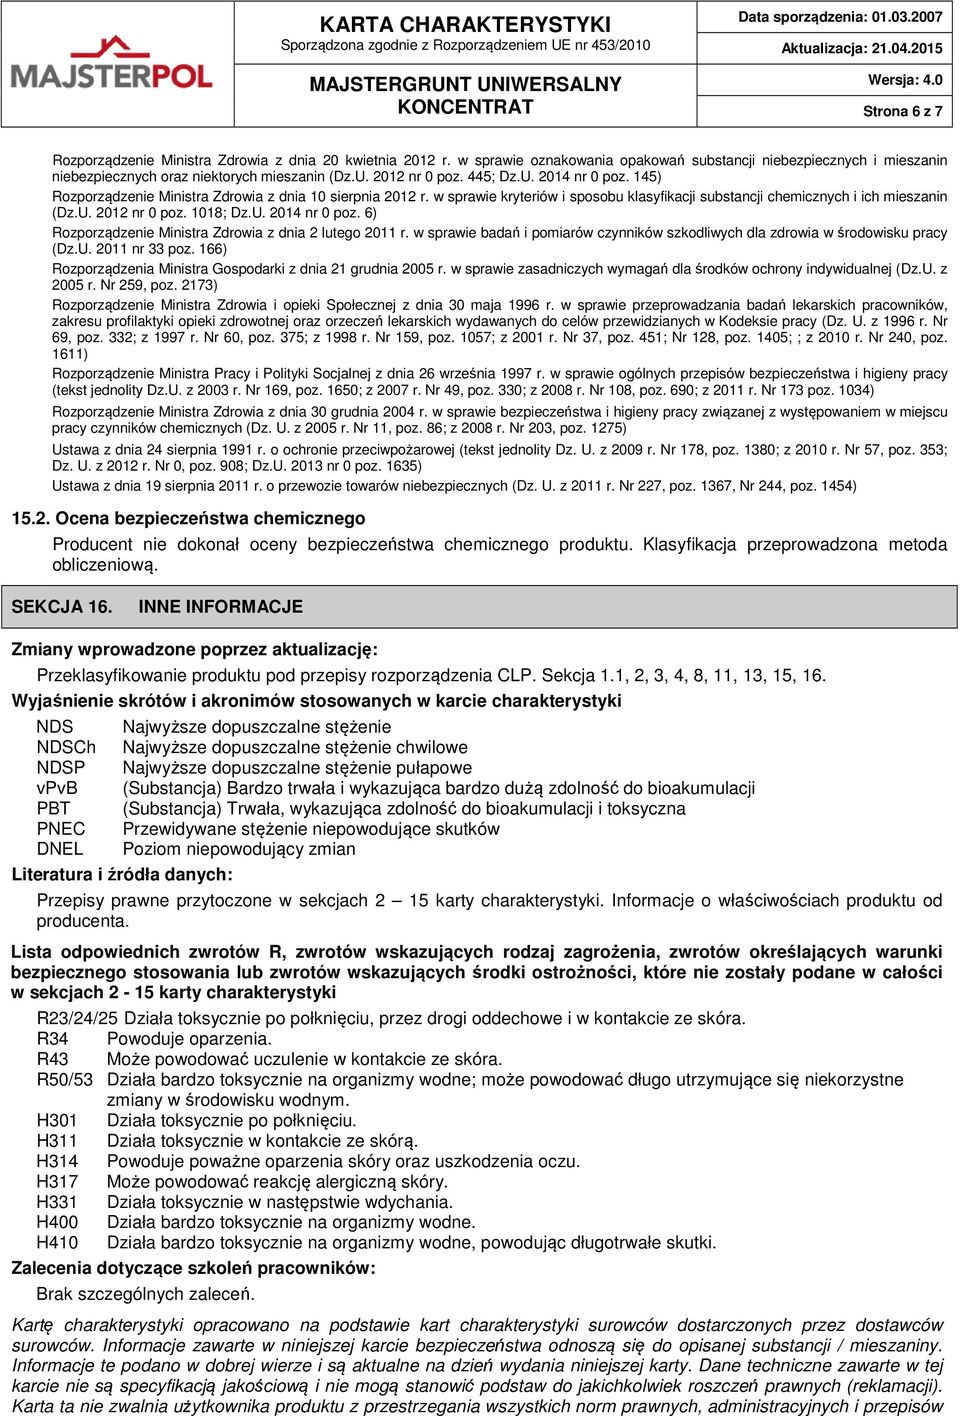 1018; Dz.U. 2014 nr 0 poz. 6) Rozporządzenie Ministra Zdrowia z dnia 2 lutego 2011 r. w sprawie badań i pomiarów czynników szkodliwych dla zdrowia w środowisku pracy (Dz.U. 2011 nr 33 poz.